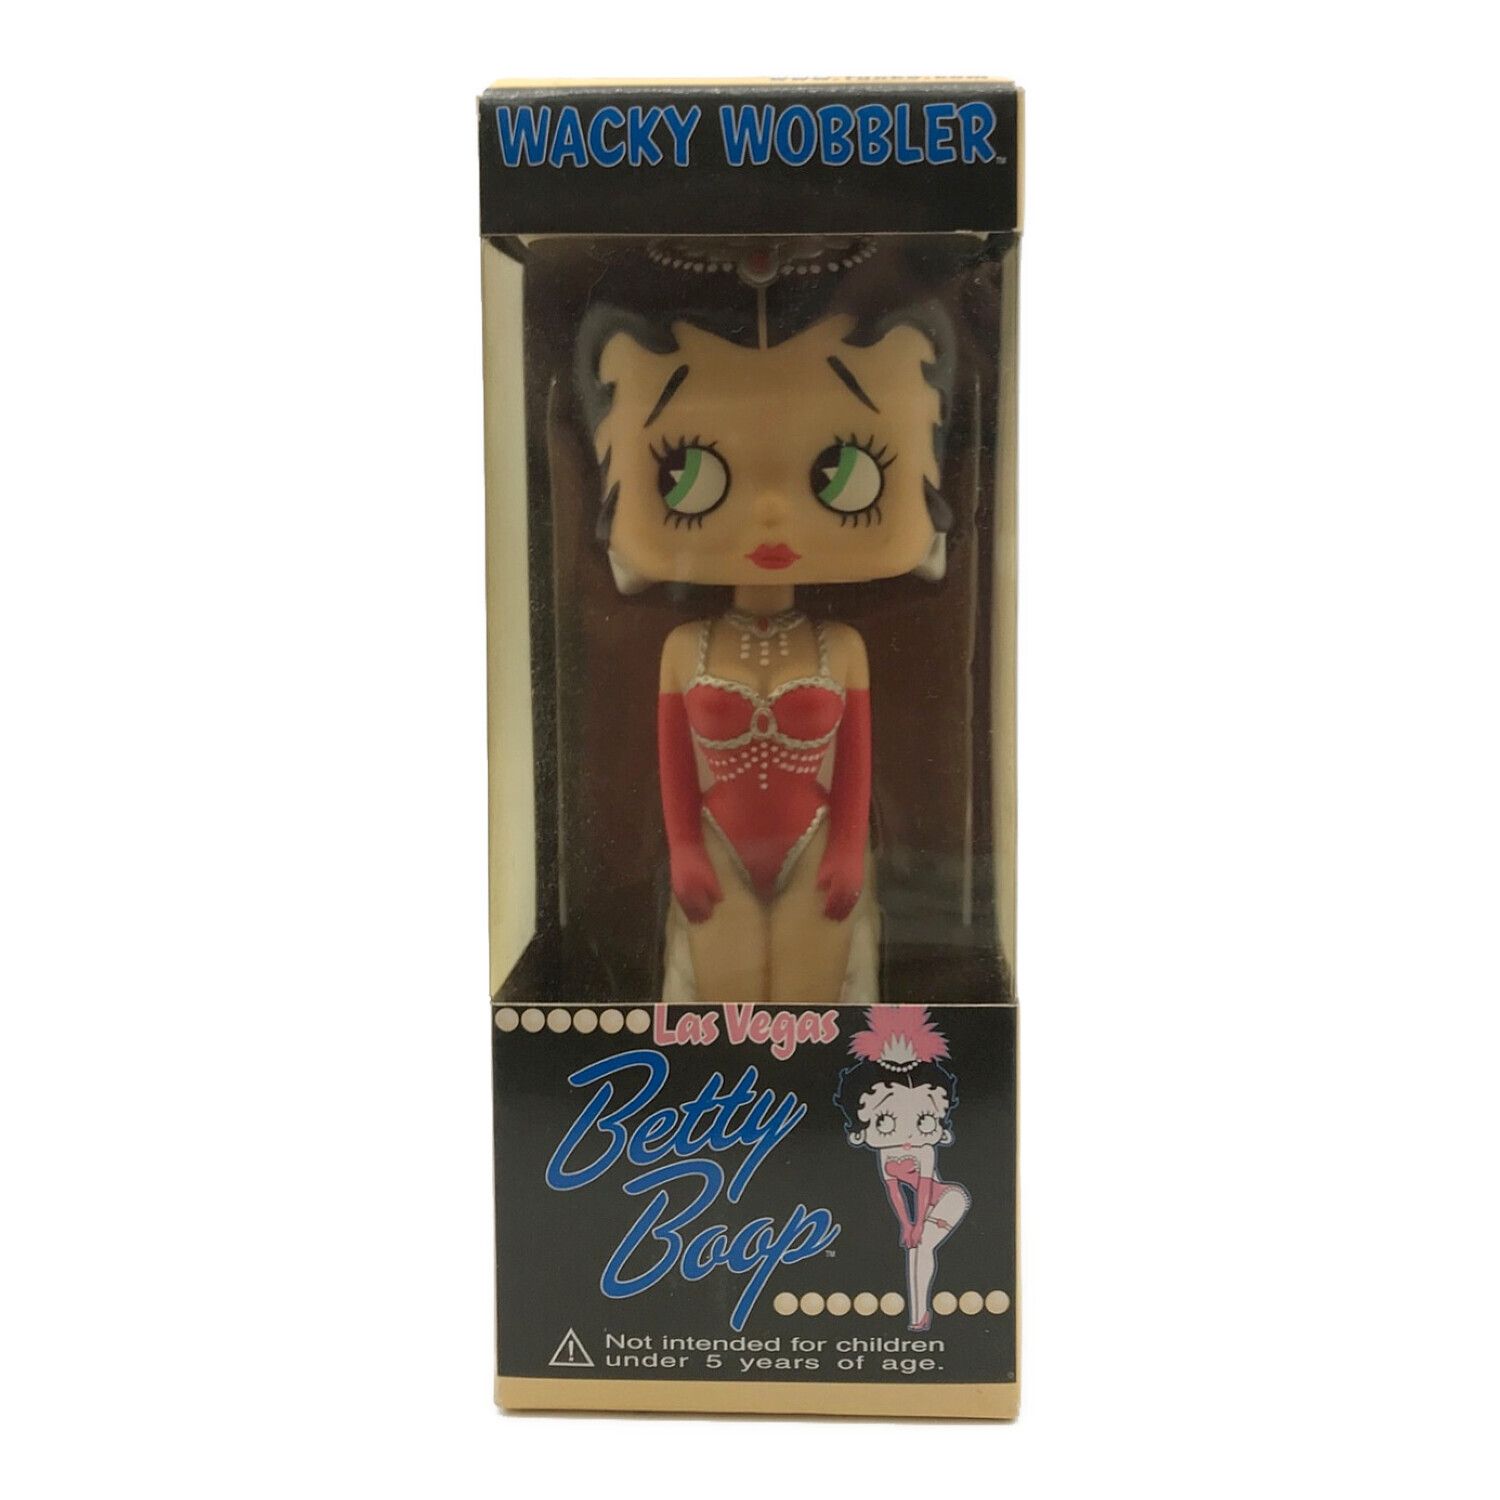 WACKY WOBBLER (ワッキーワブラー) フィギュア Betty Boop バブル